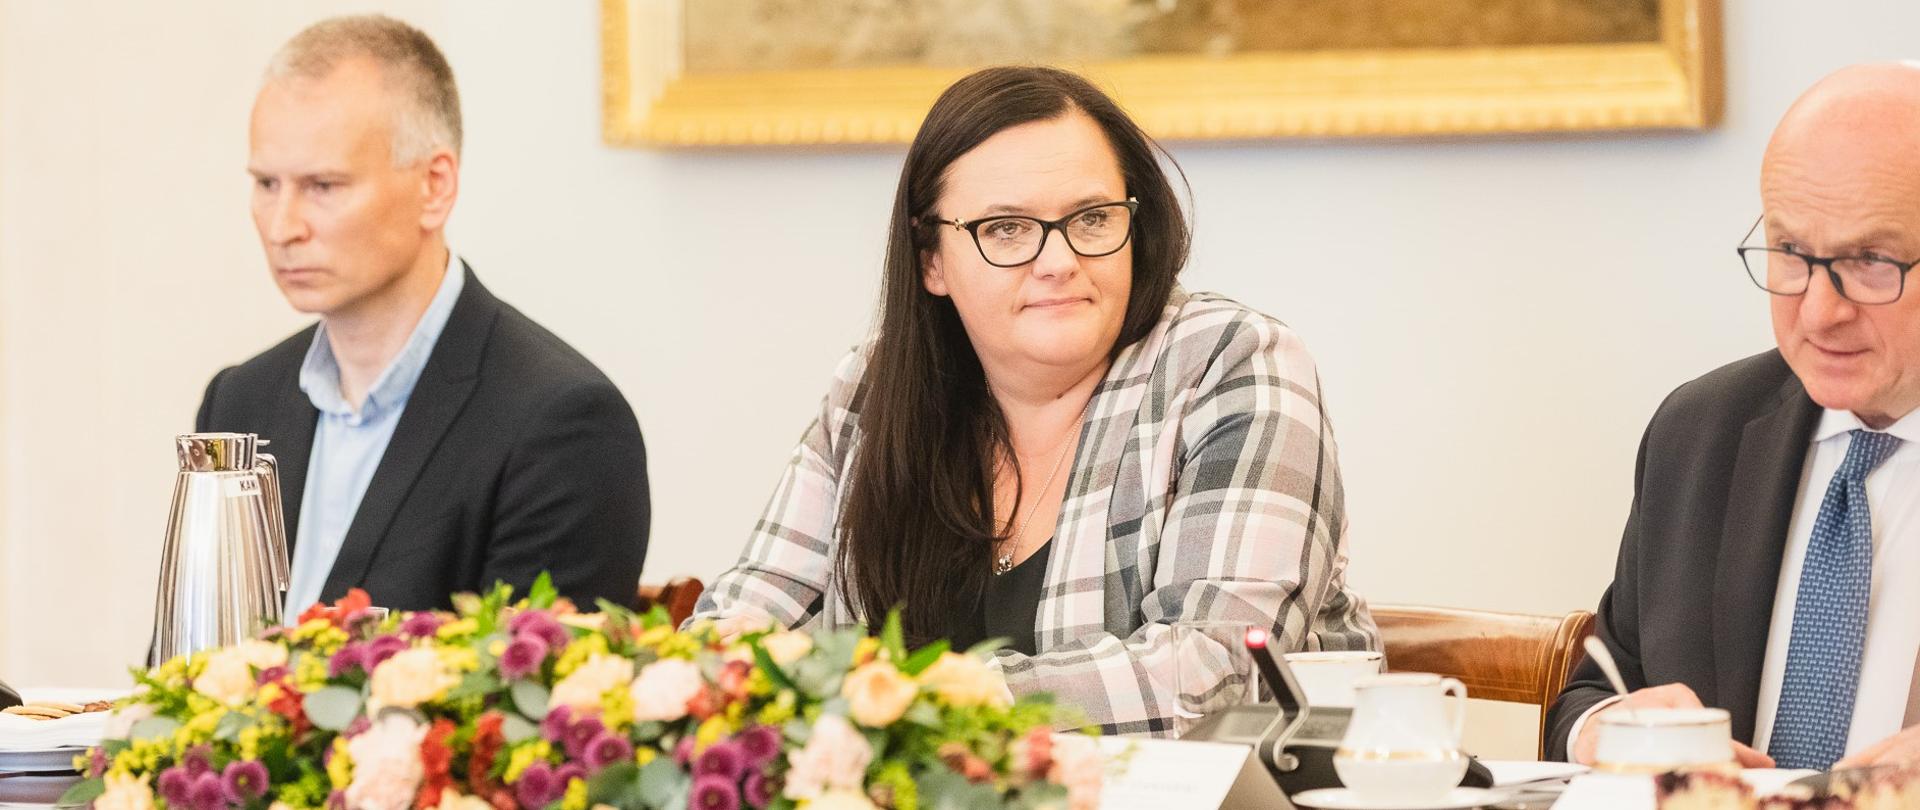 Wiceminister Małgorzata Jarosińska-Jedynak siedzi przy stole z kwiatami. Obok niej dwóch mężczyzna.